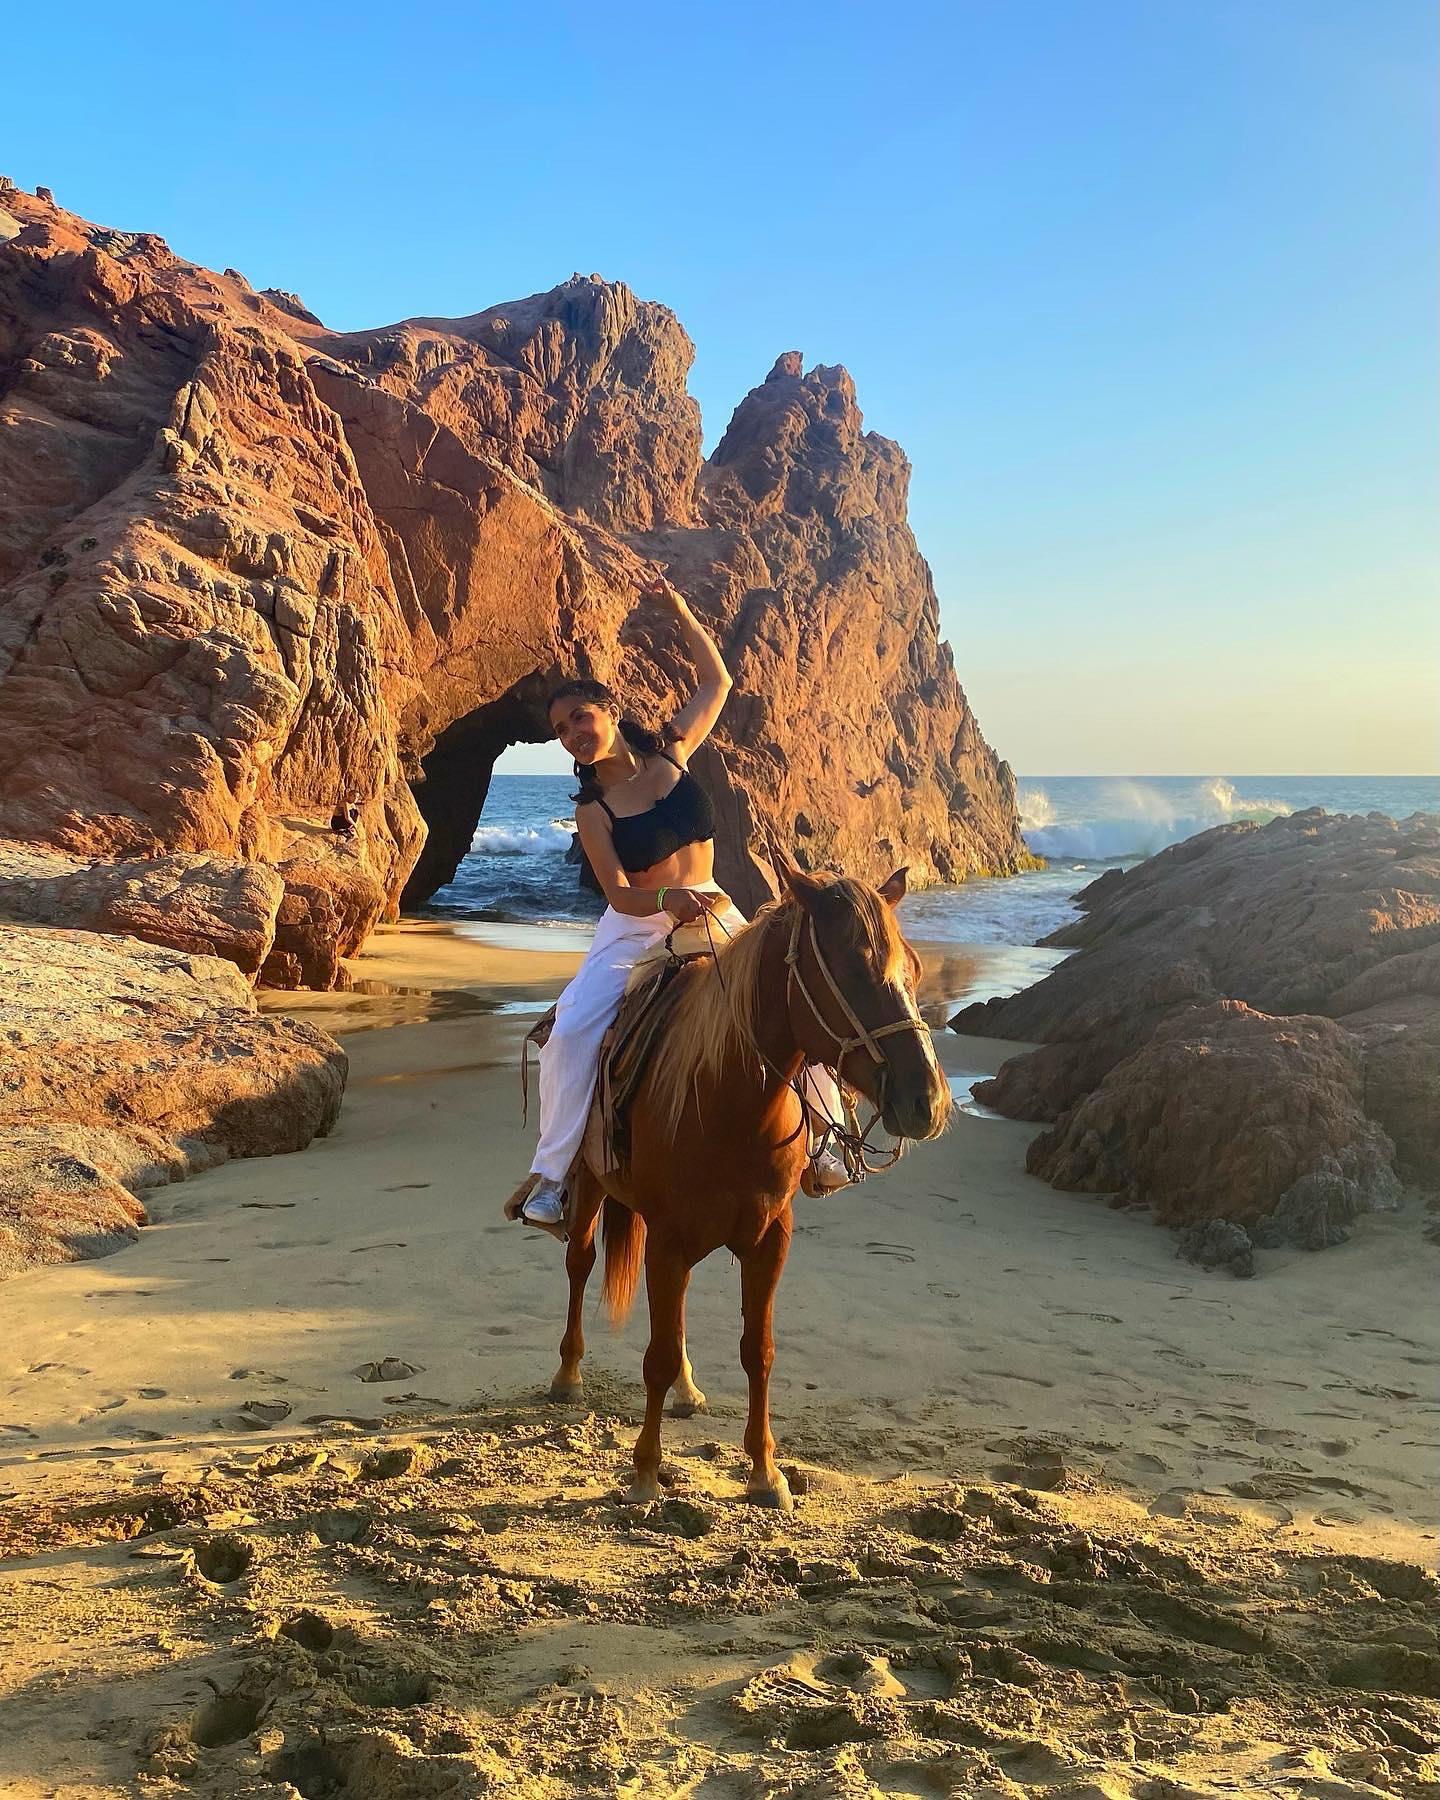 Salma Hayek rides horseback